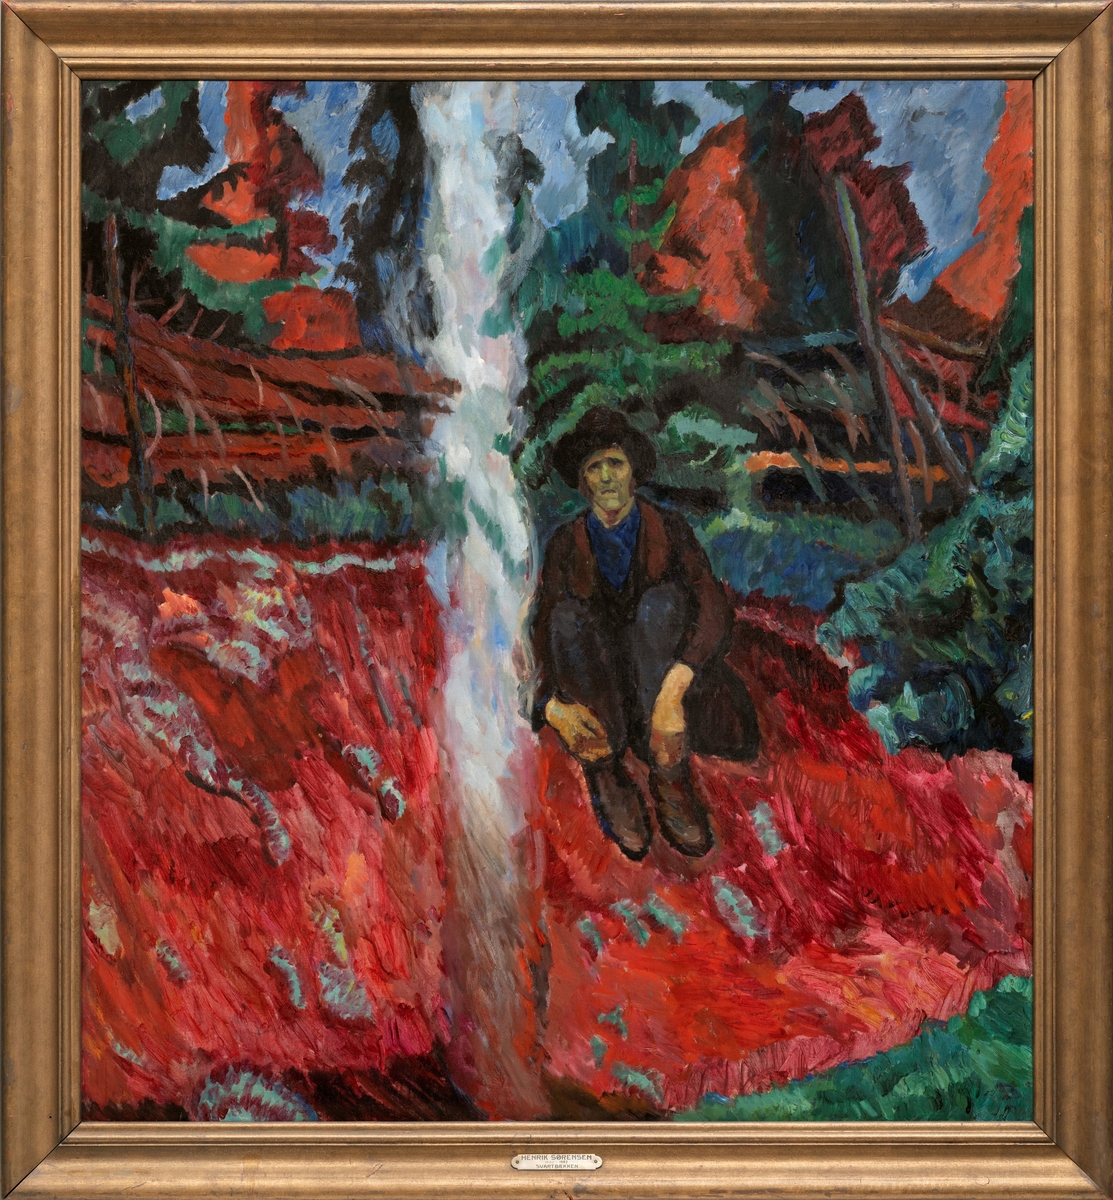 I en åpning i skogen sitter en ensom, mørkledd mann ved et bål. Røyken stiger rett til værs, gressbakken i sterk rødt. Grantrær og skigard i bakgrunnen.